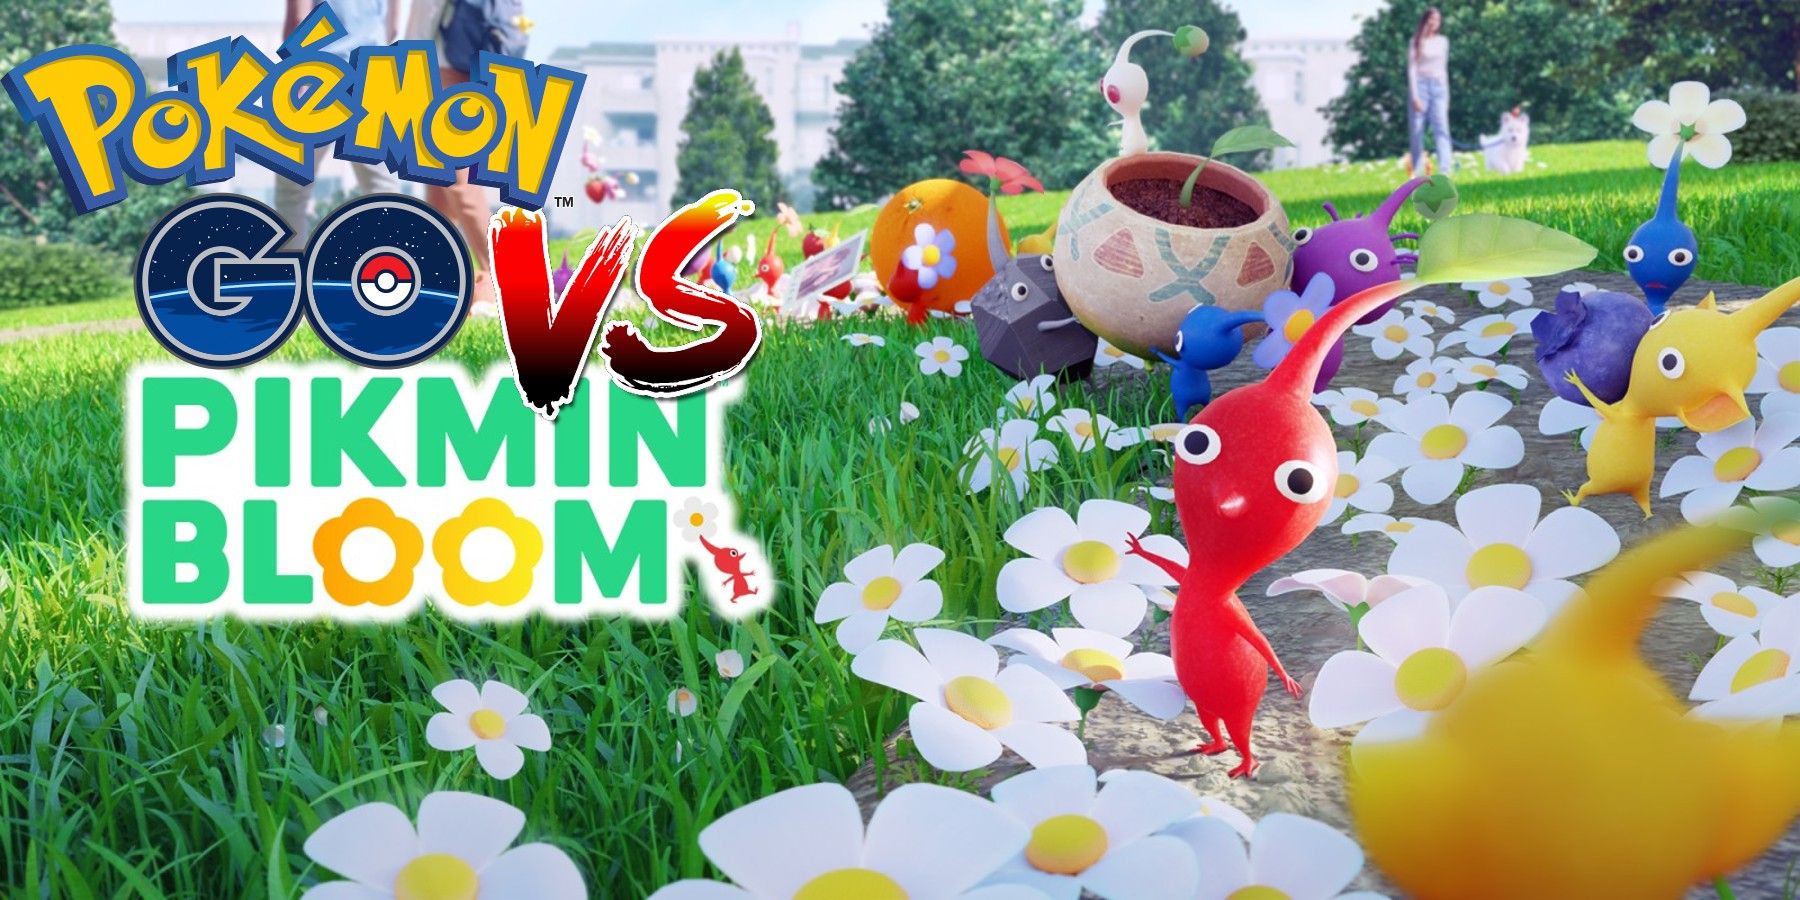 Pikmin Bloom Vs Pokemon Go